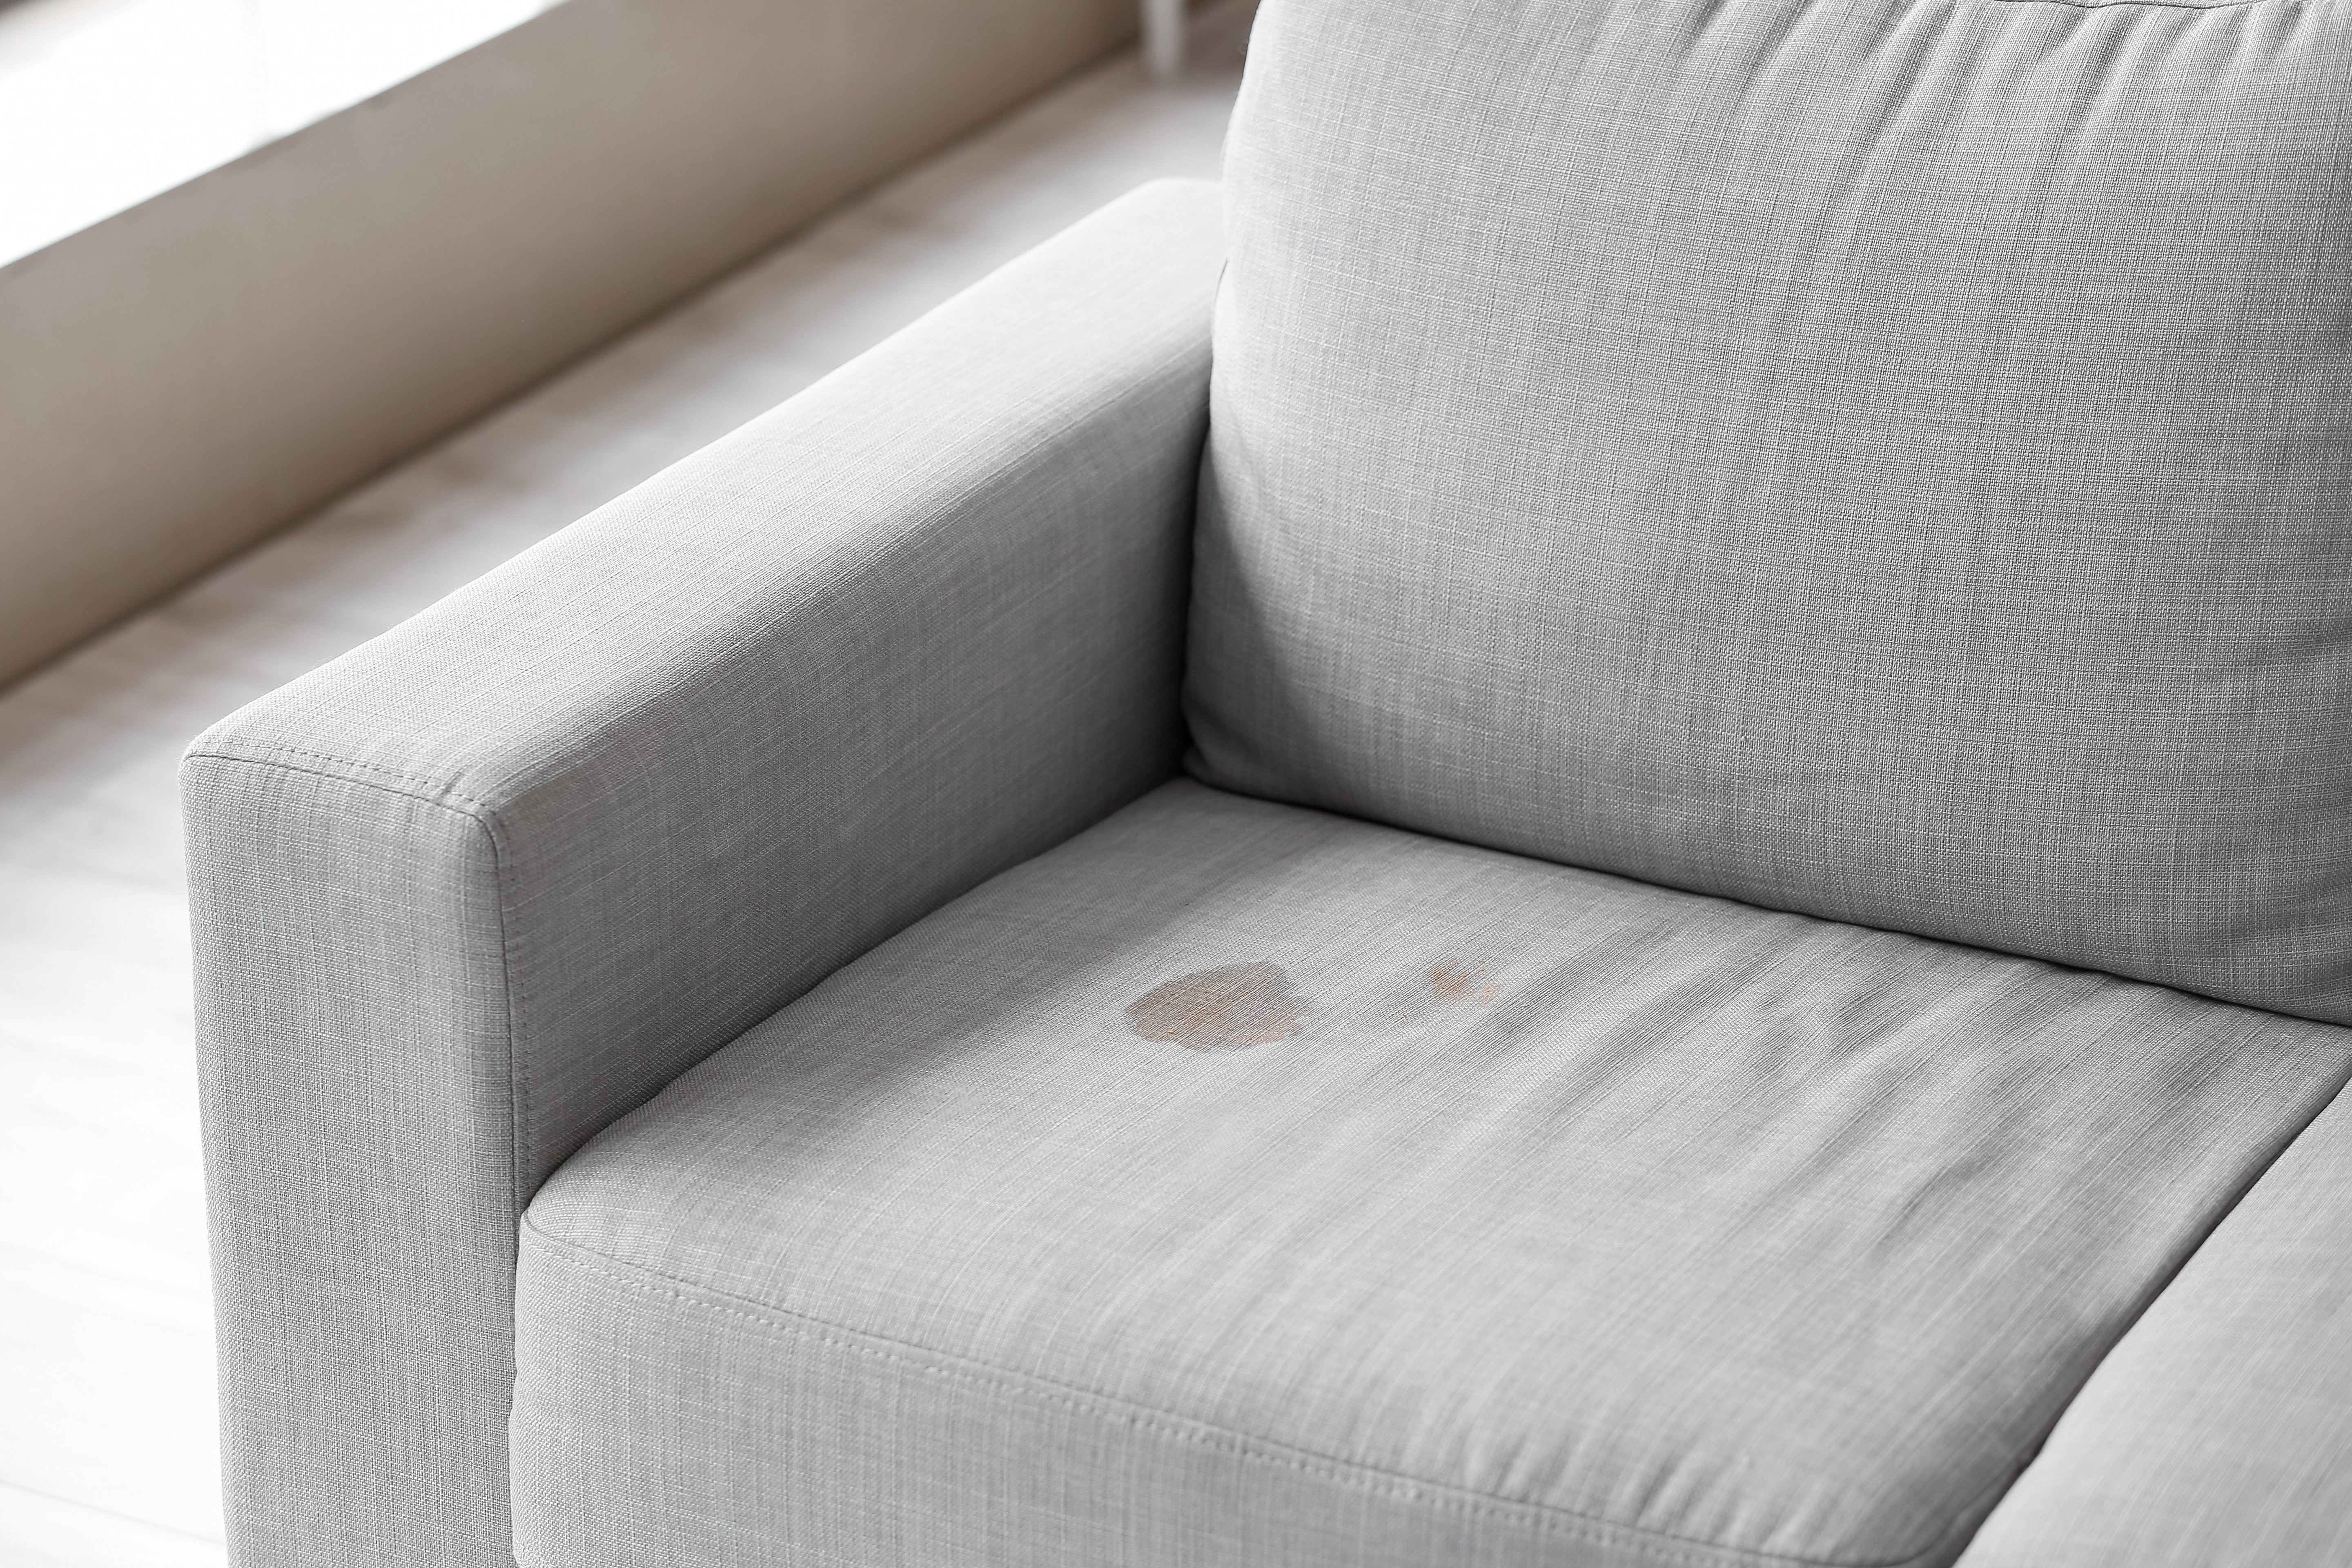 Come pulire un divano in tessuto - Il modo semplice per smacchiare un divano